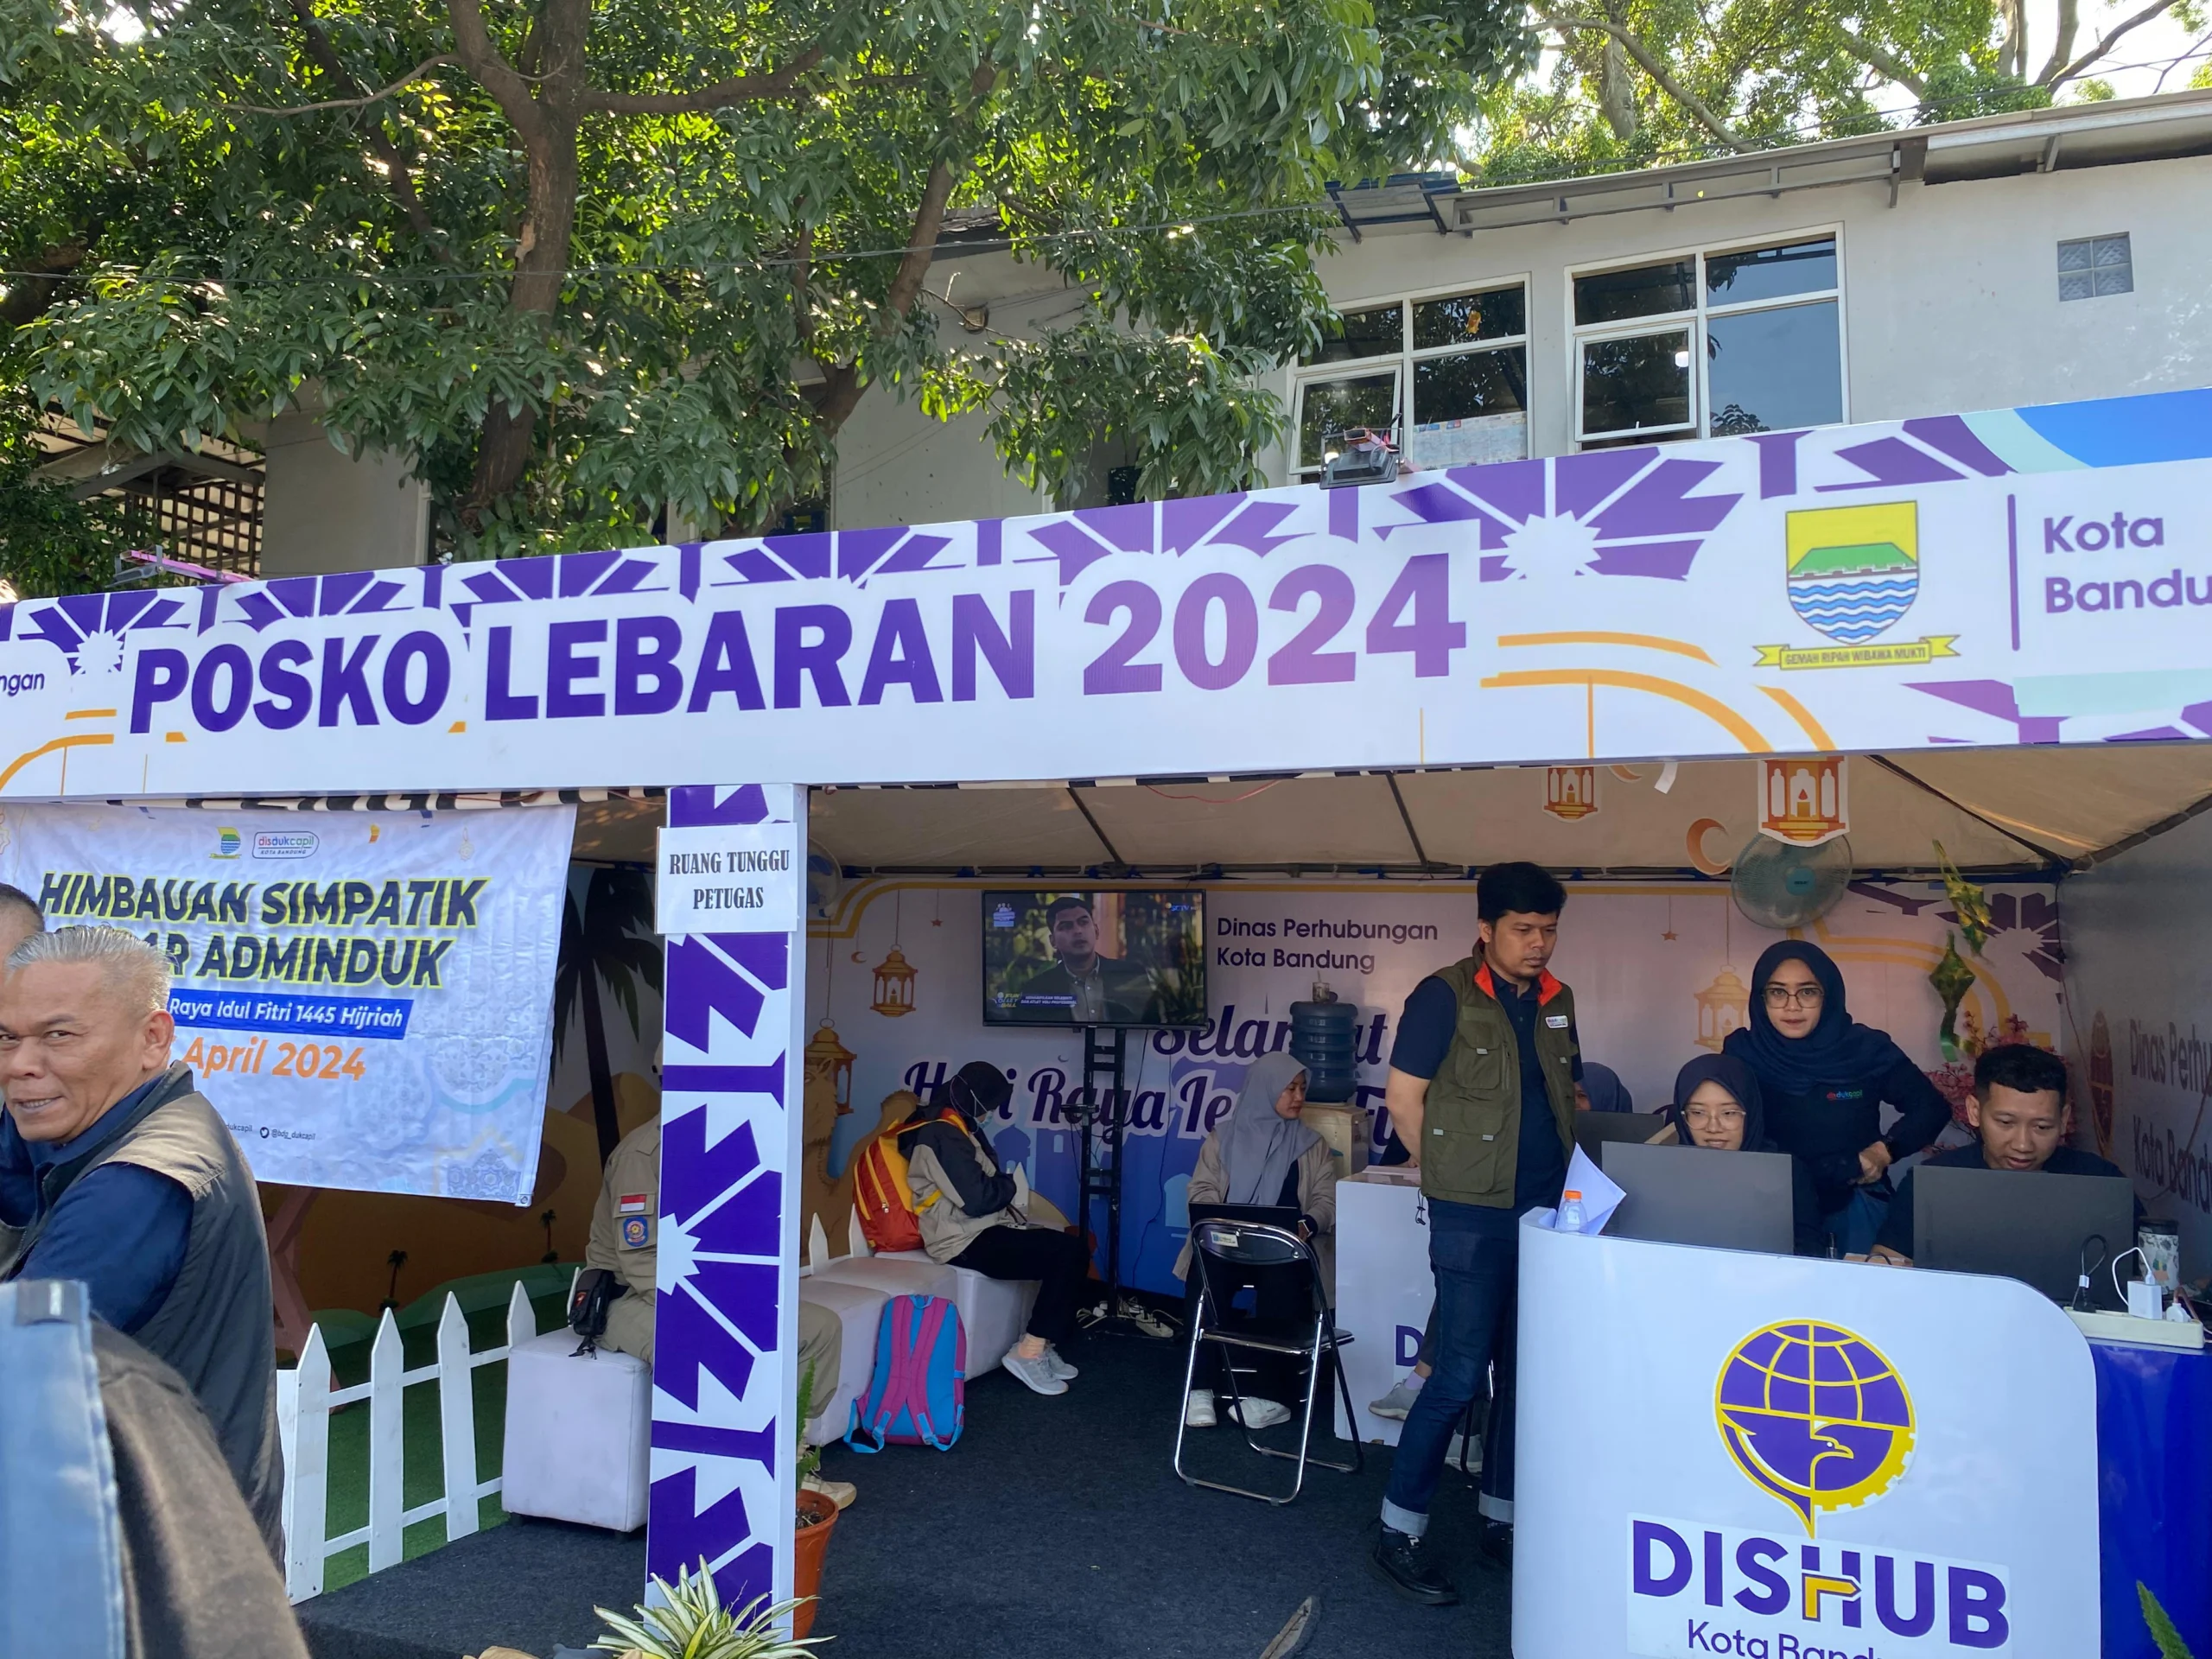 Posko Disdukcapil Kota Bandung, berkenaan dengan pendataan warga yang tiba ke Bandung, dalam kegiatan imbauan simpatii, di Terminal Caheum, pada Selasa (16/4). (Nizar/Jabar Ekspres)